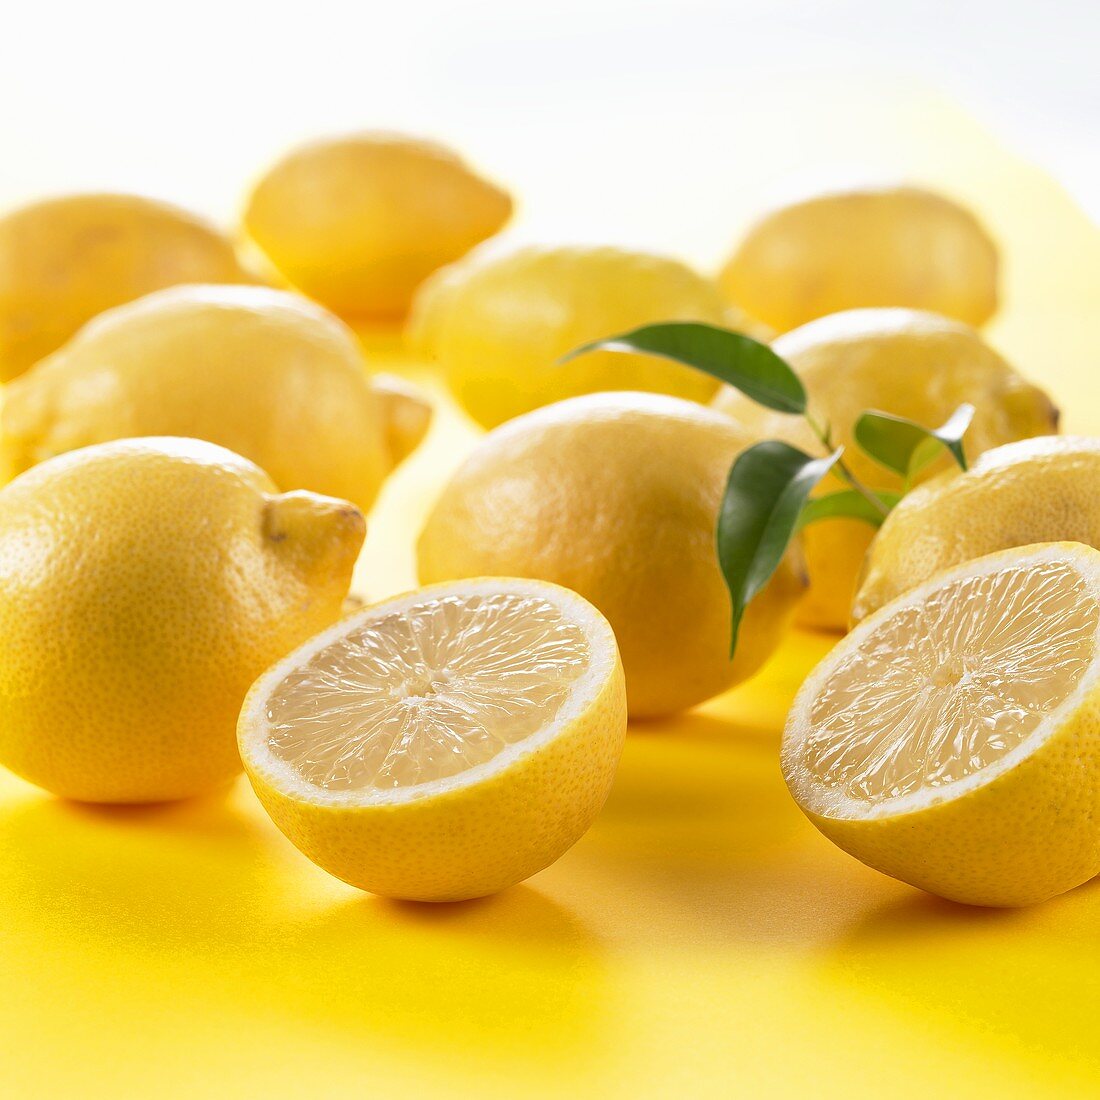 Whole lemons and one halved lemon